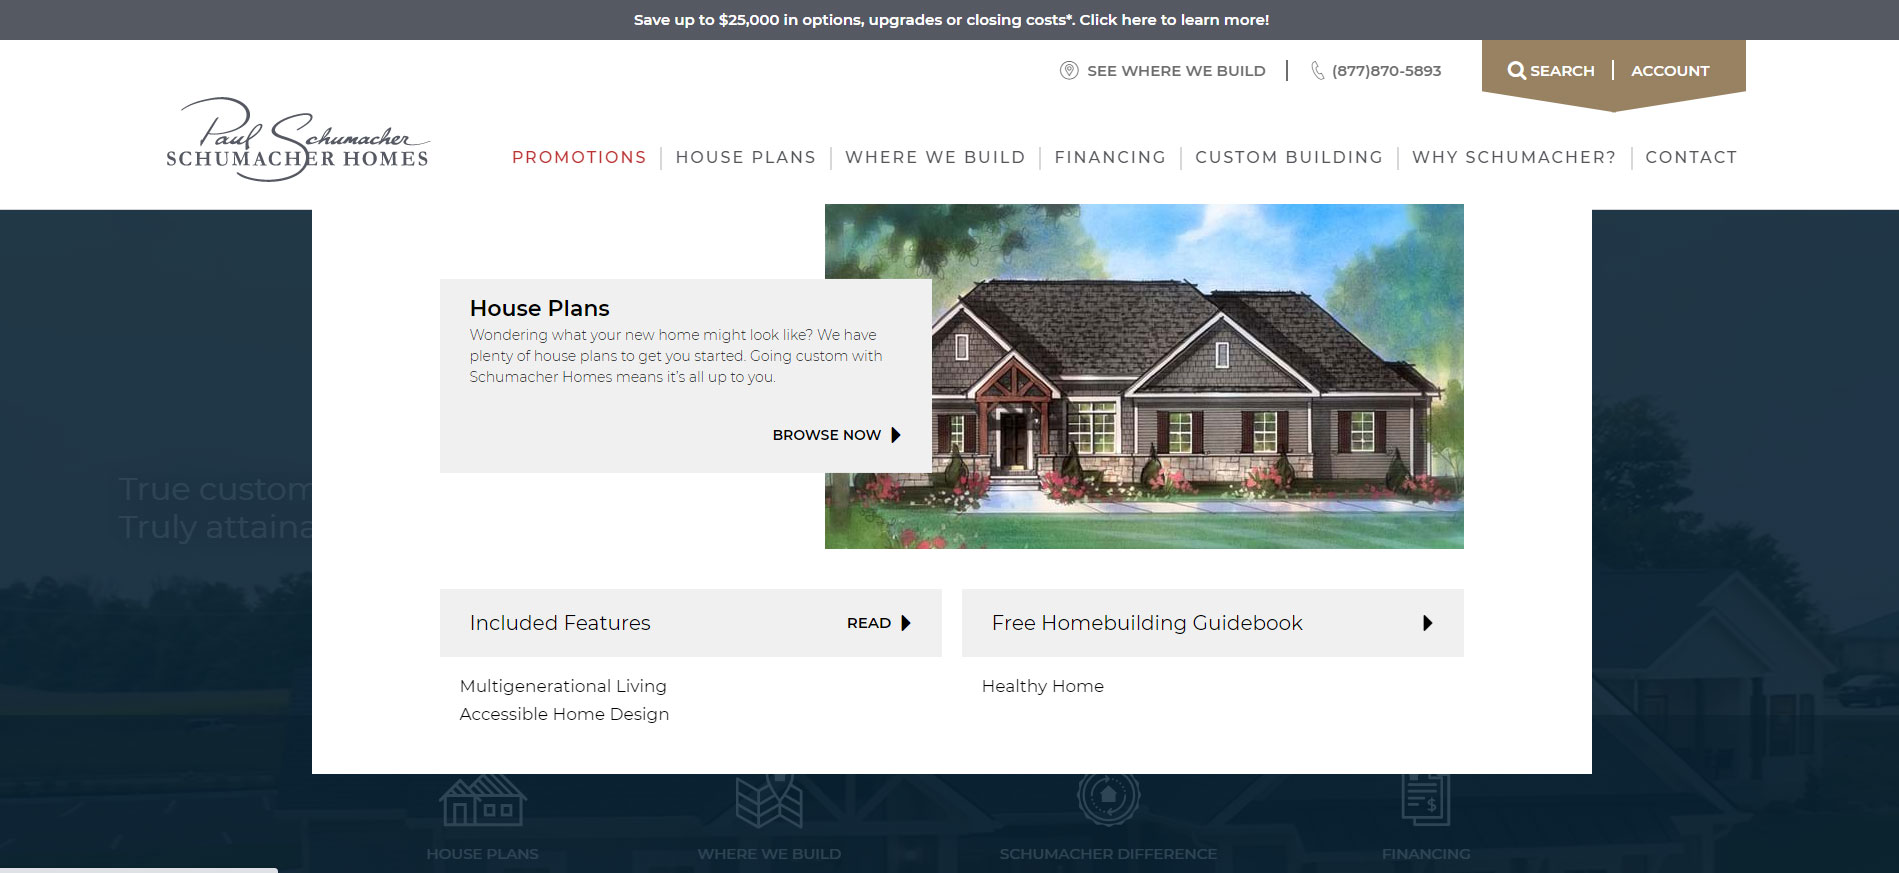 Schumacher Homes的房地产开发网站设计